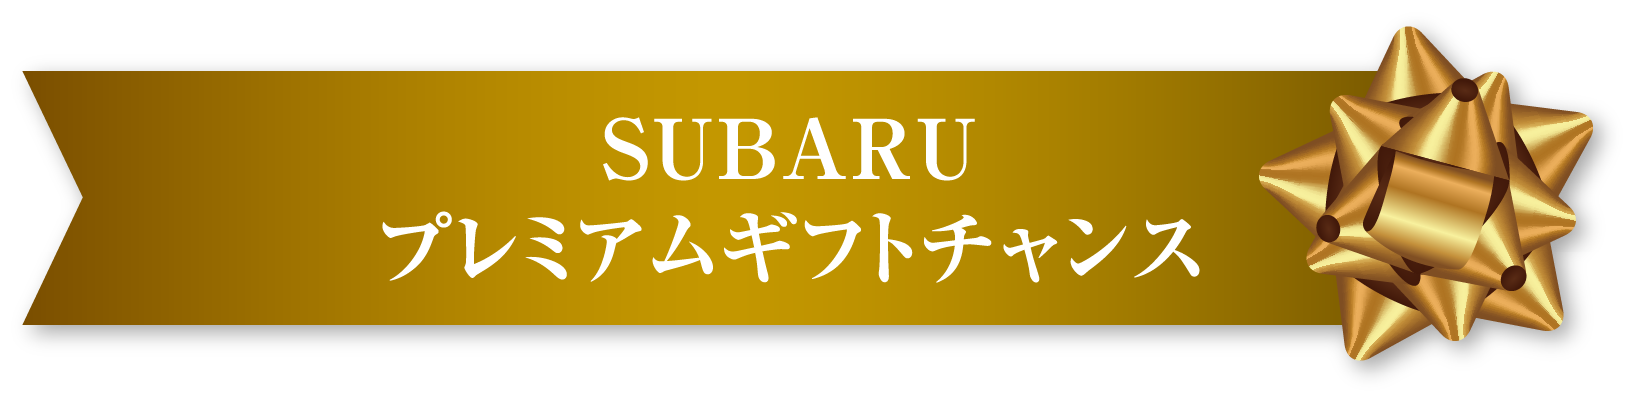 SUBARU プレミアムギフトチャンス